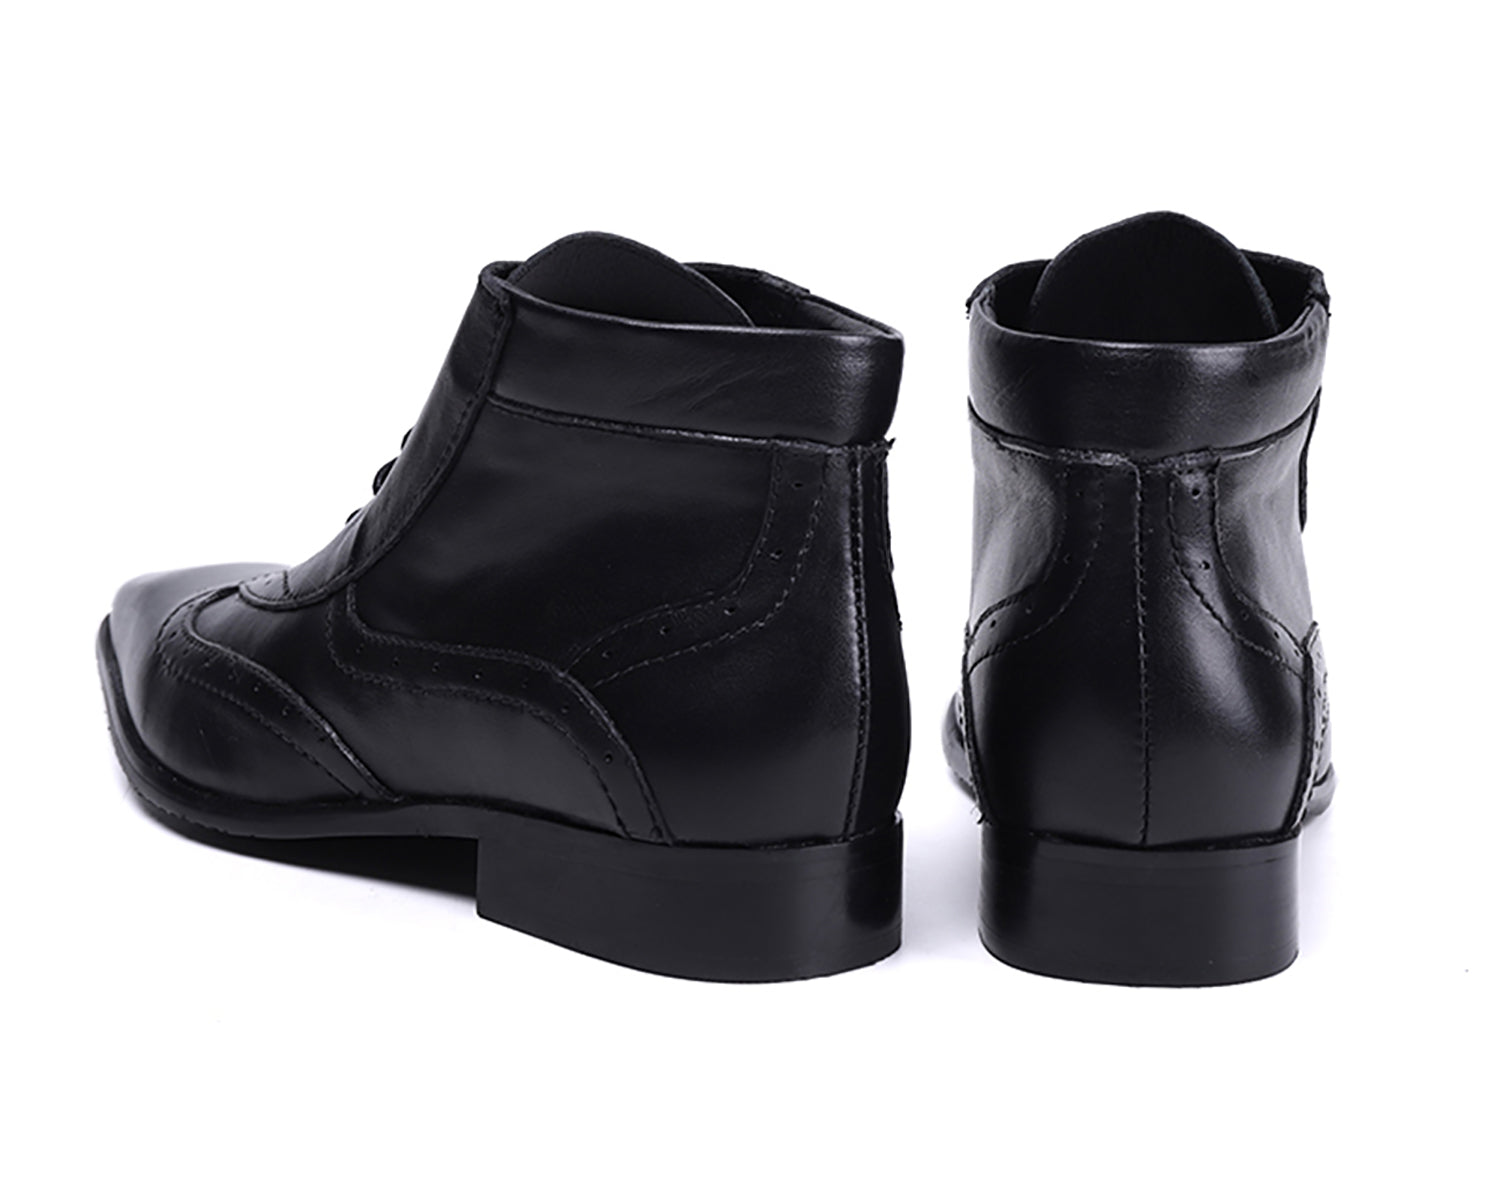 Men's Leather Plain Toe  Dress Boots